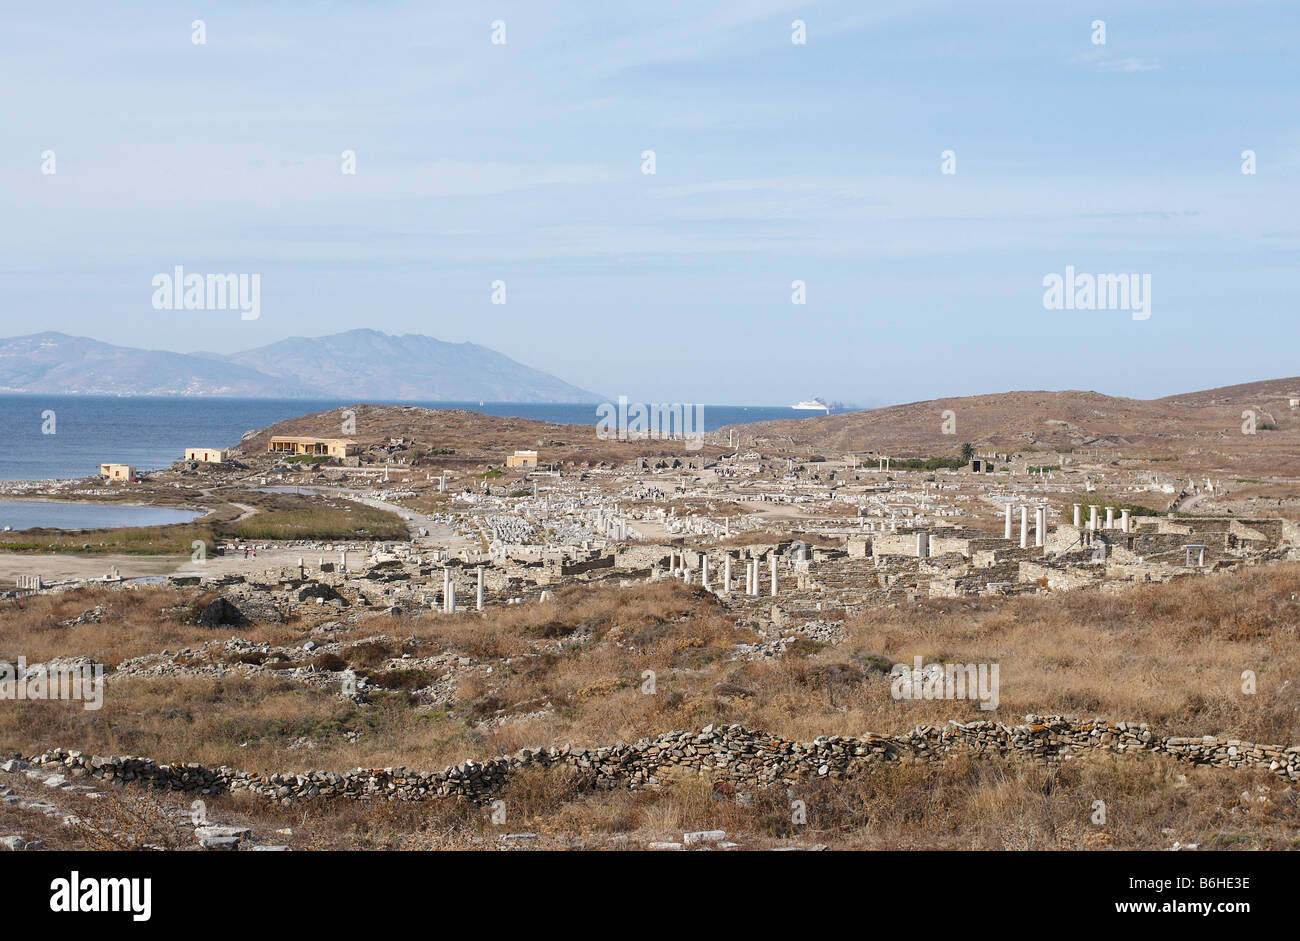 L'île de Délos est l'une des plus importantes figures mythiques, historiques et sites archéologiques en Grèce Banque D'Images